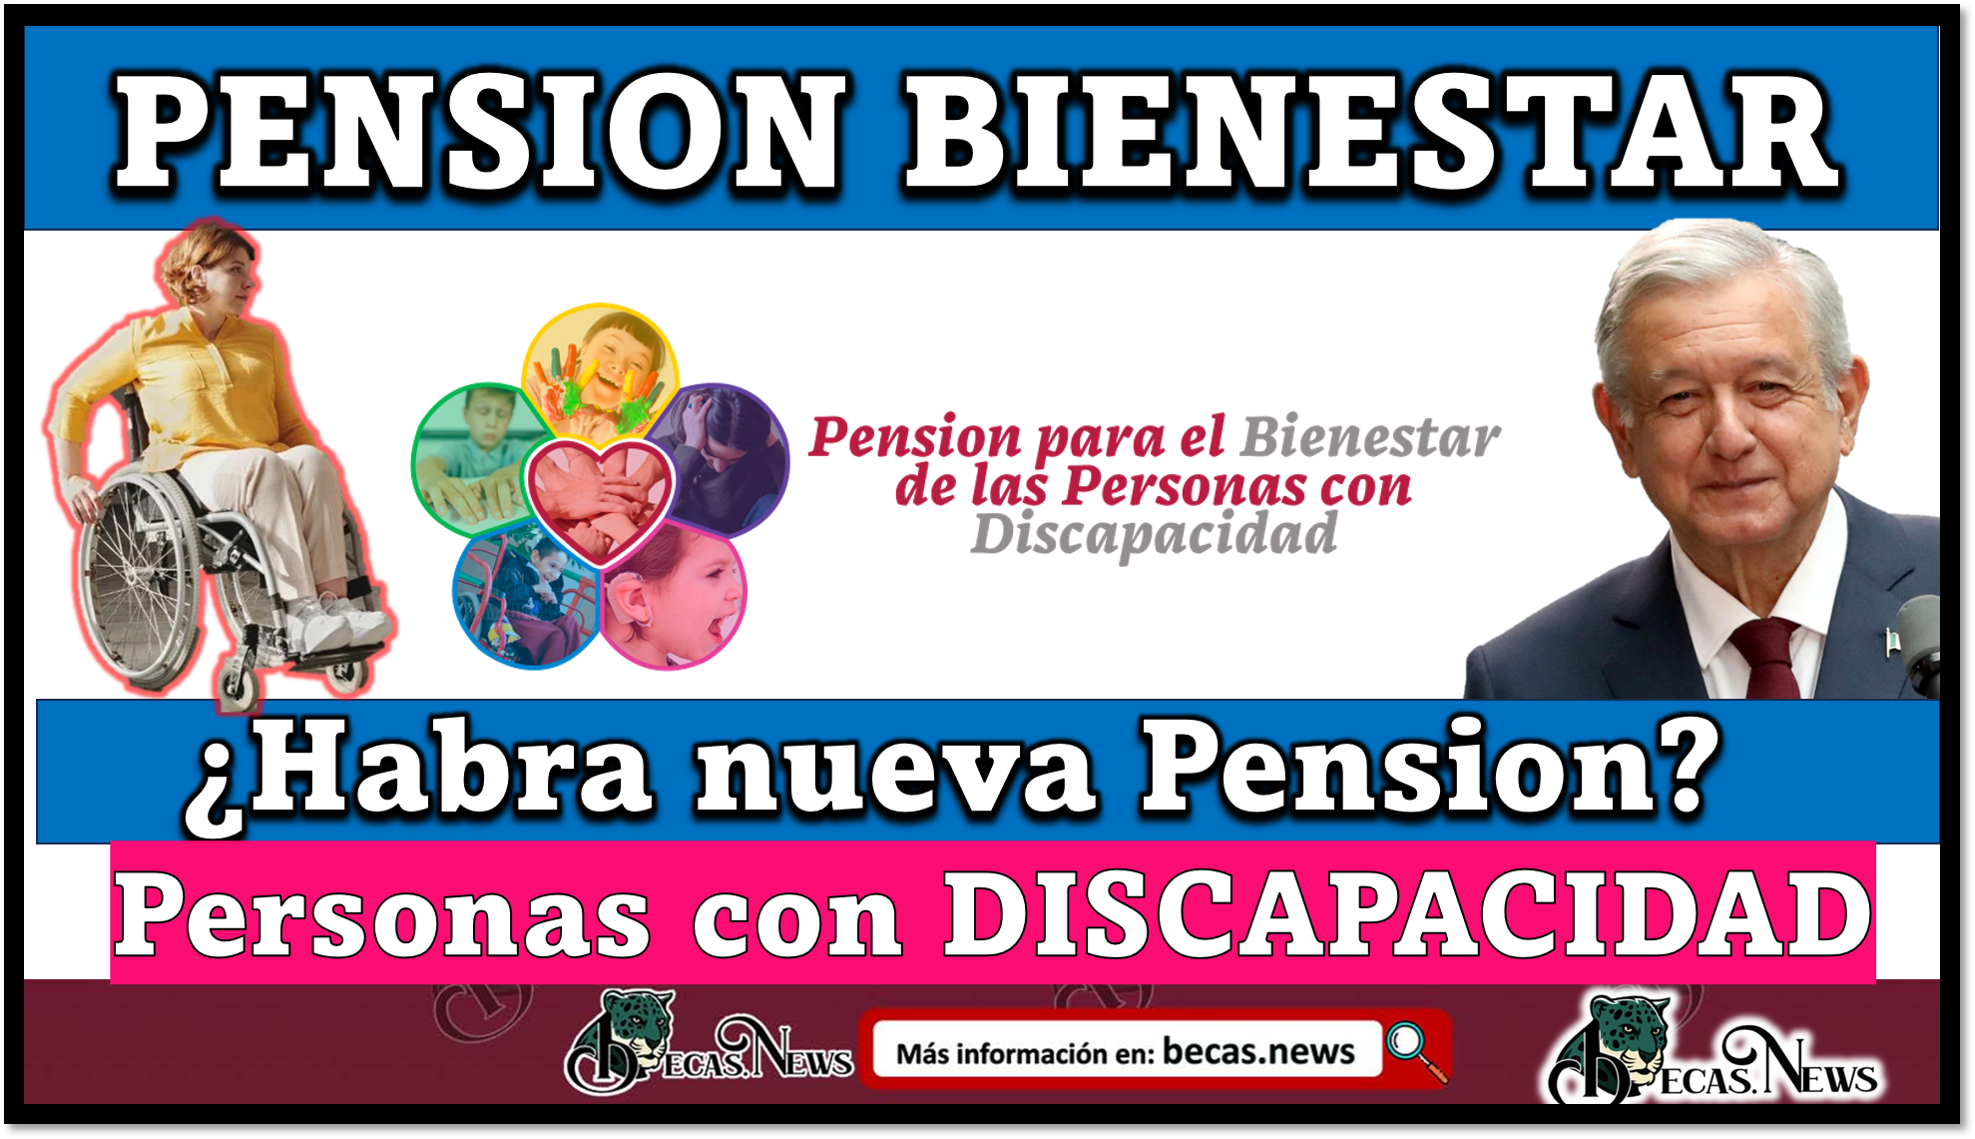 Nueva Pension, la Secretaria del Bienestar lanza un anuncio para los Adultos Mayores